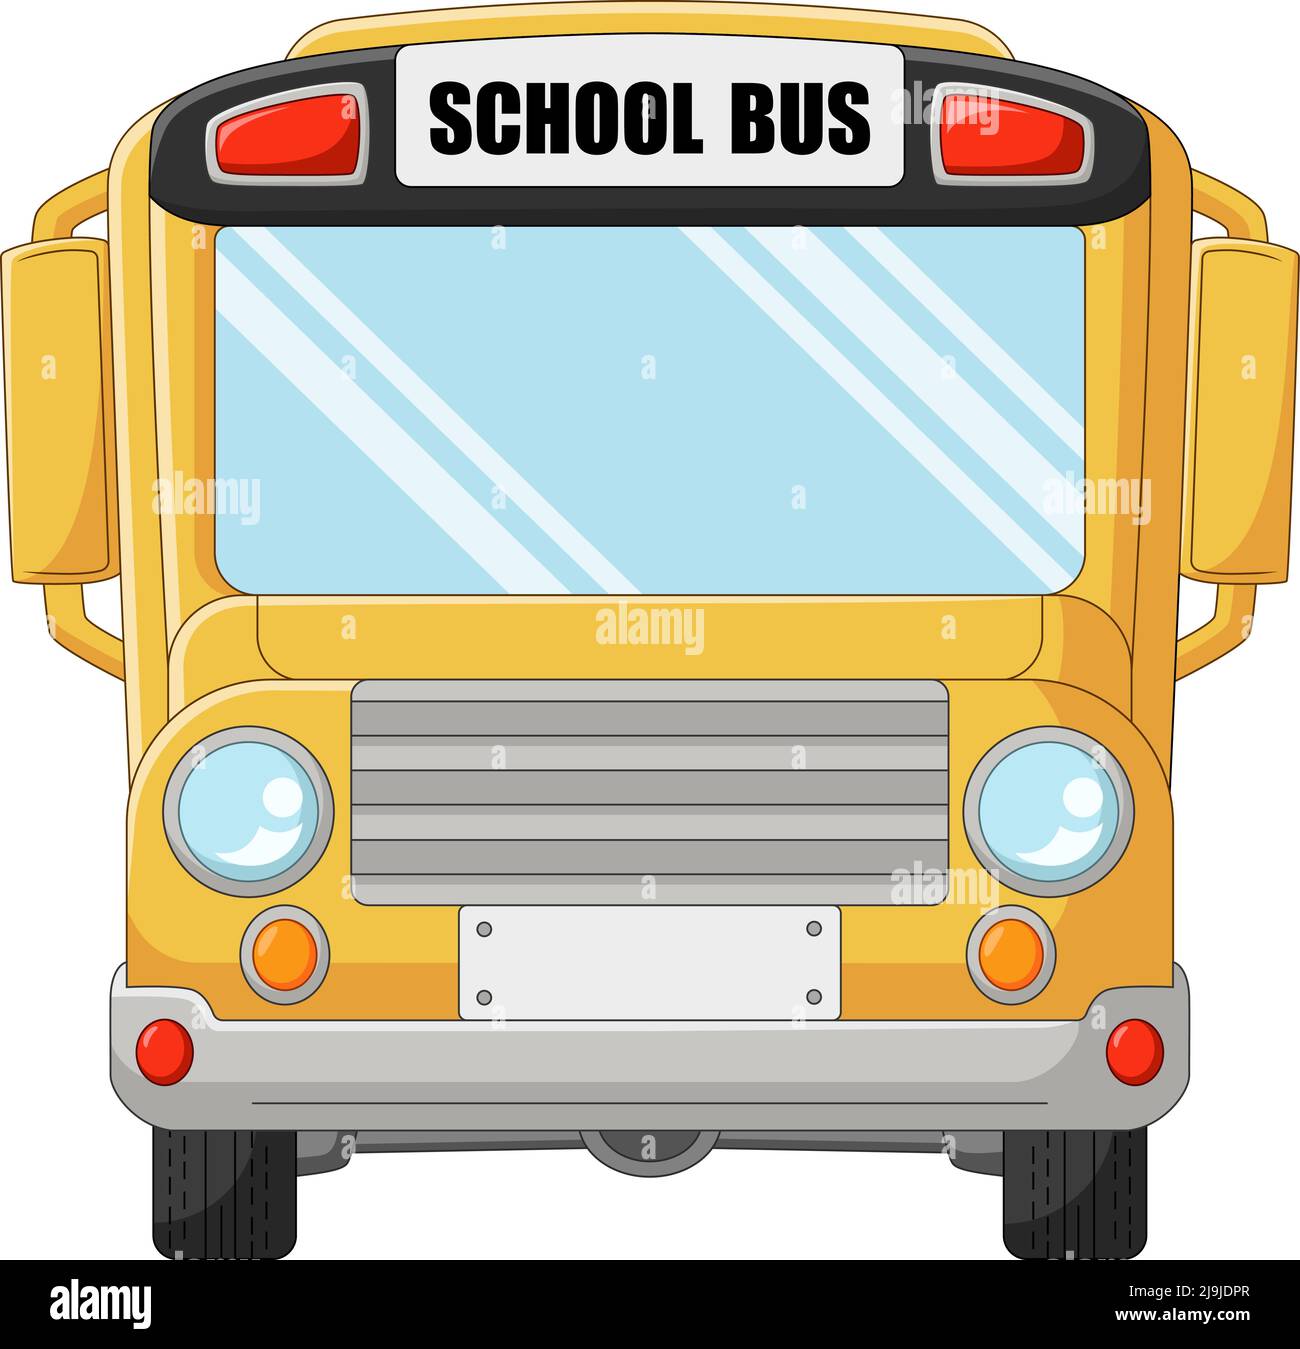 cartoon transit buses